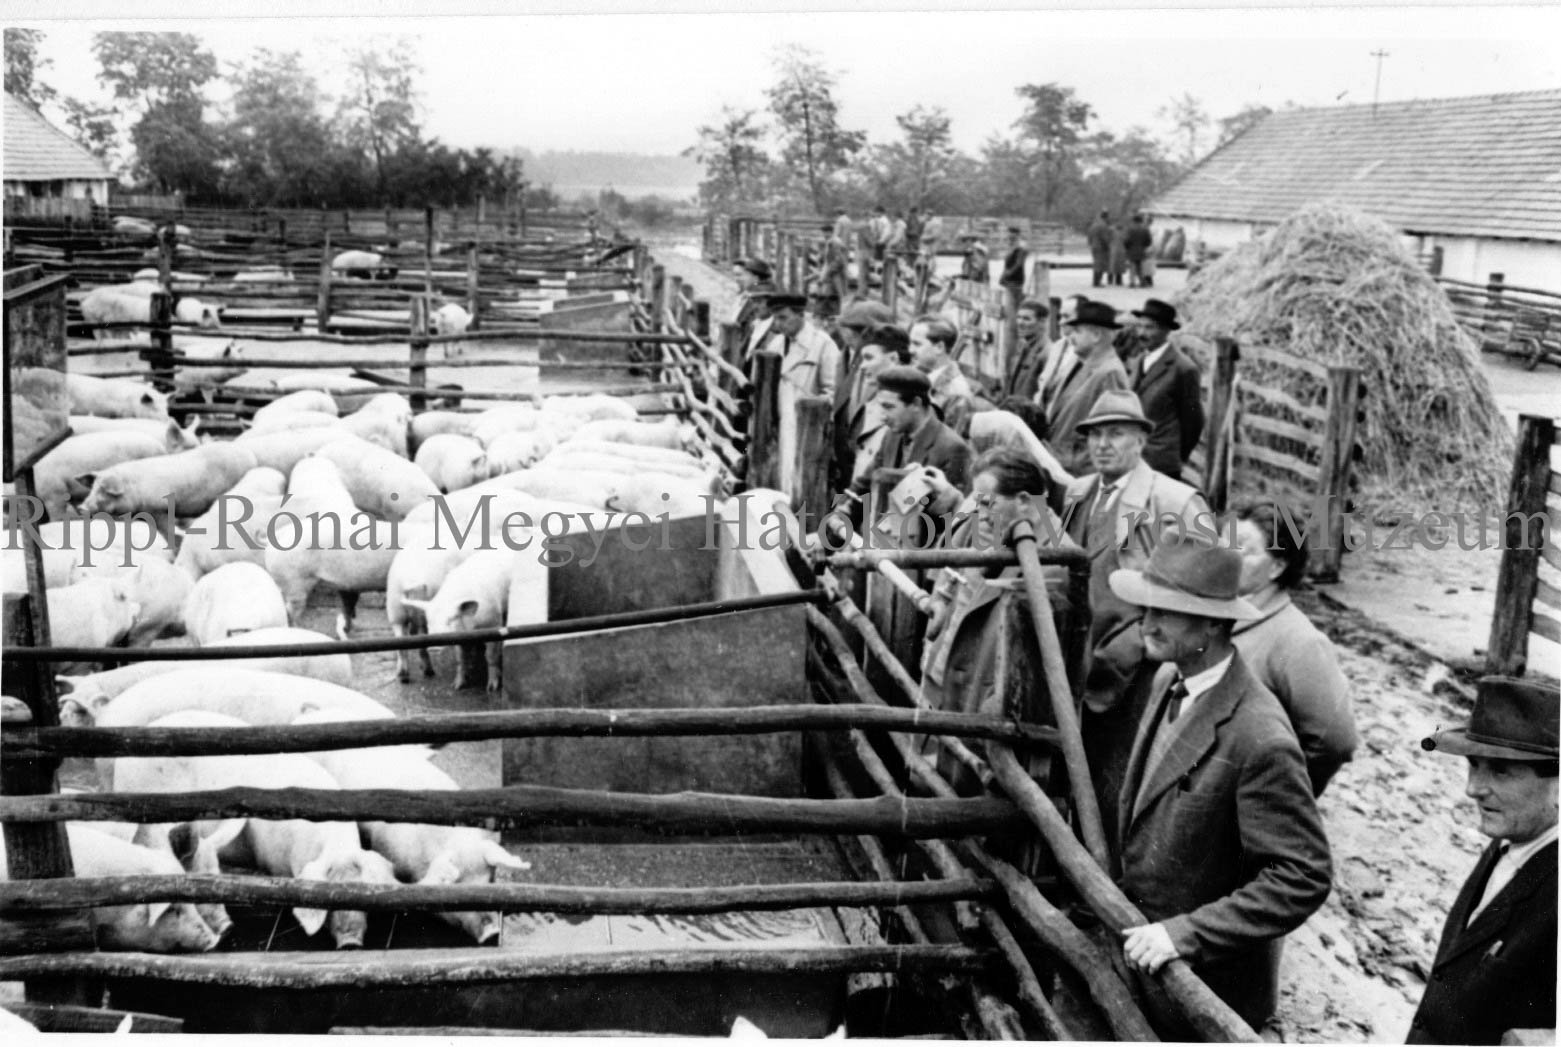 Termelőszövetkezeti vezetők Barcson. Megtekintik a sertésállományt (Rippl-Rónai Múzeum CC BY-NC-SA)